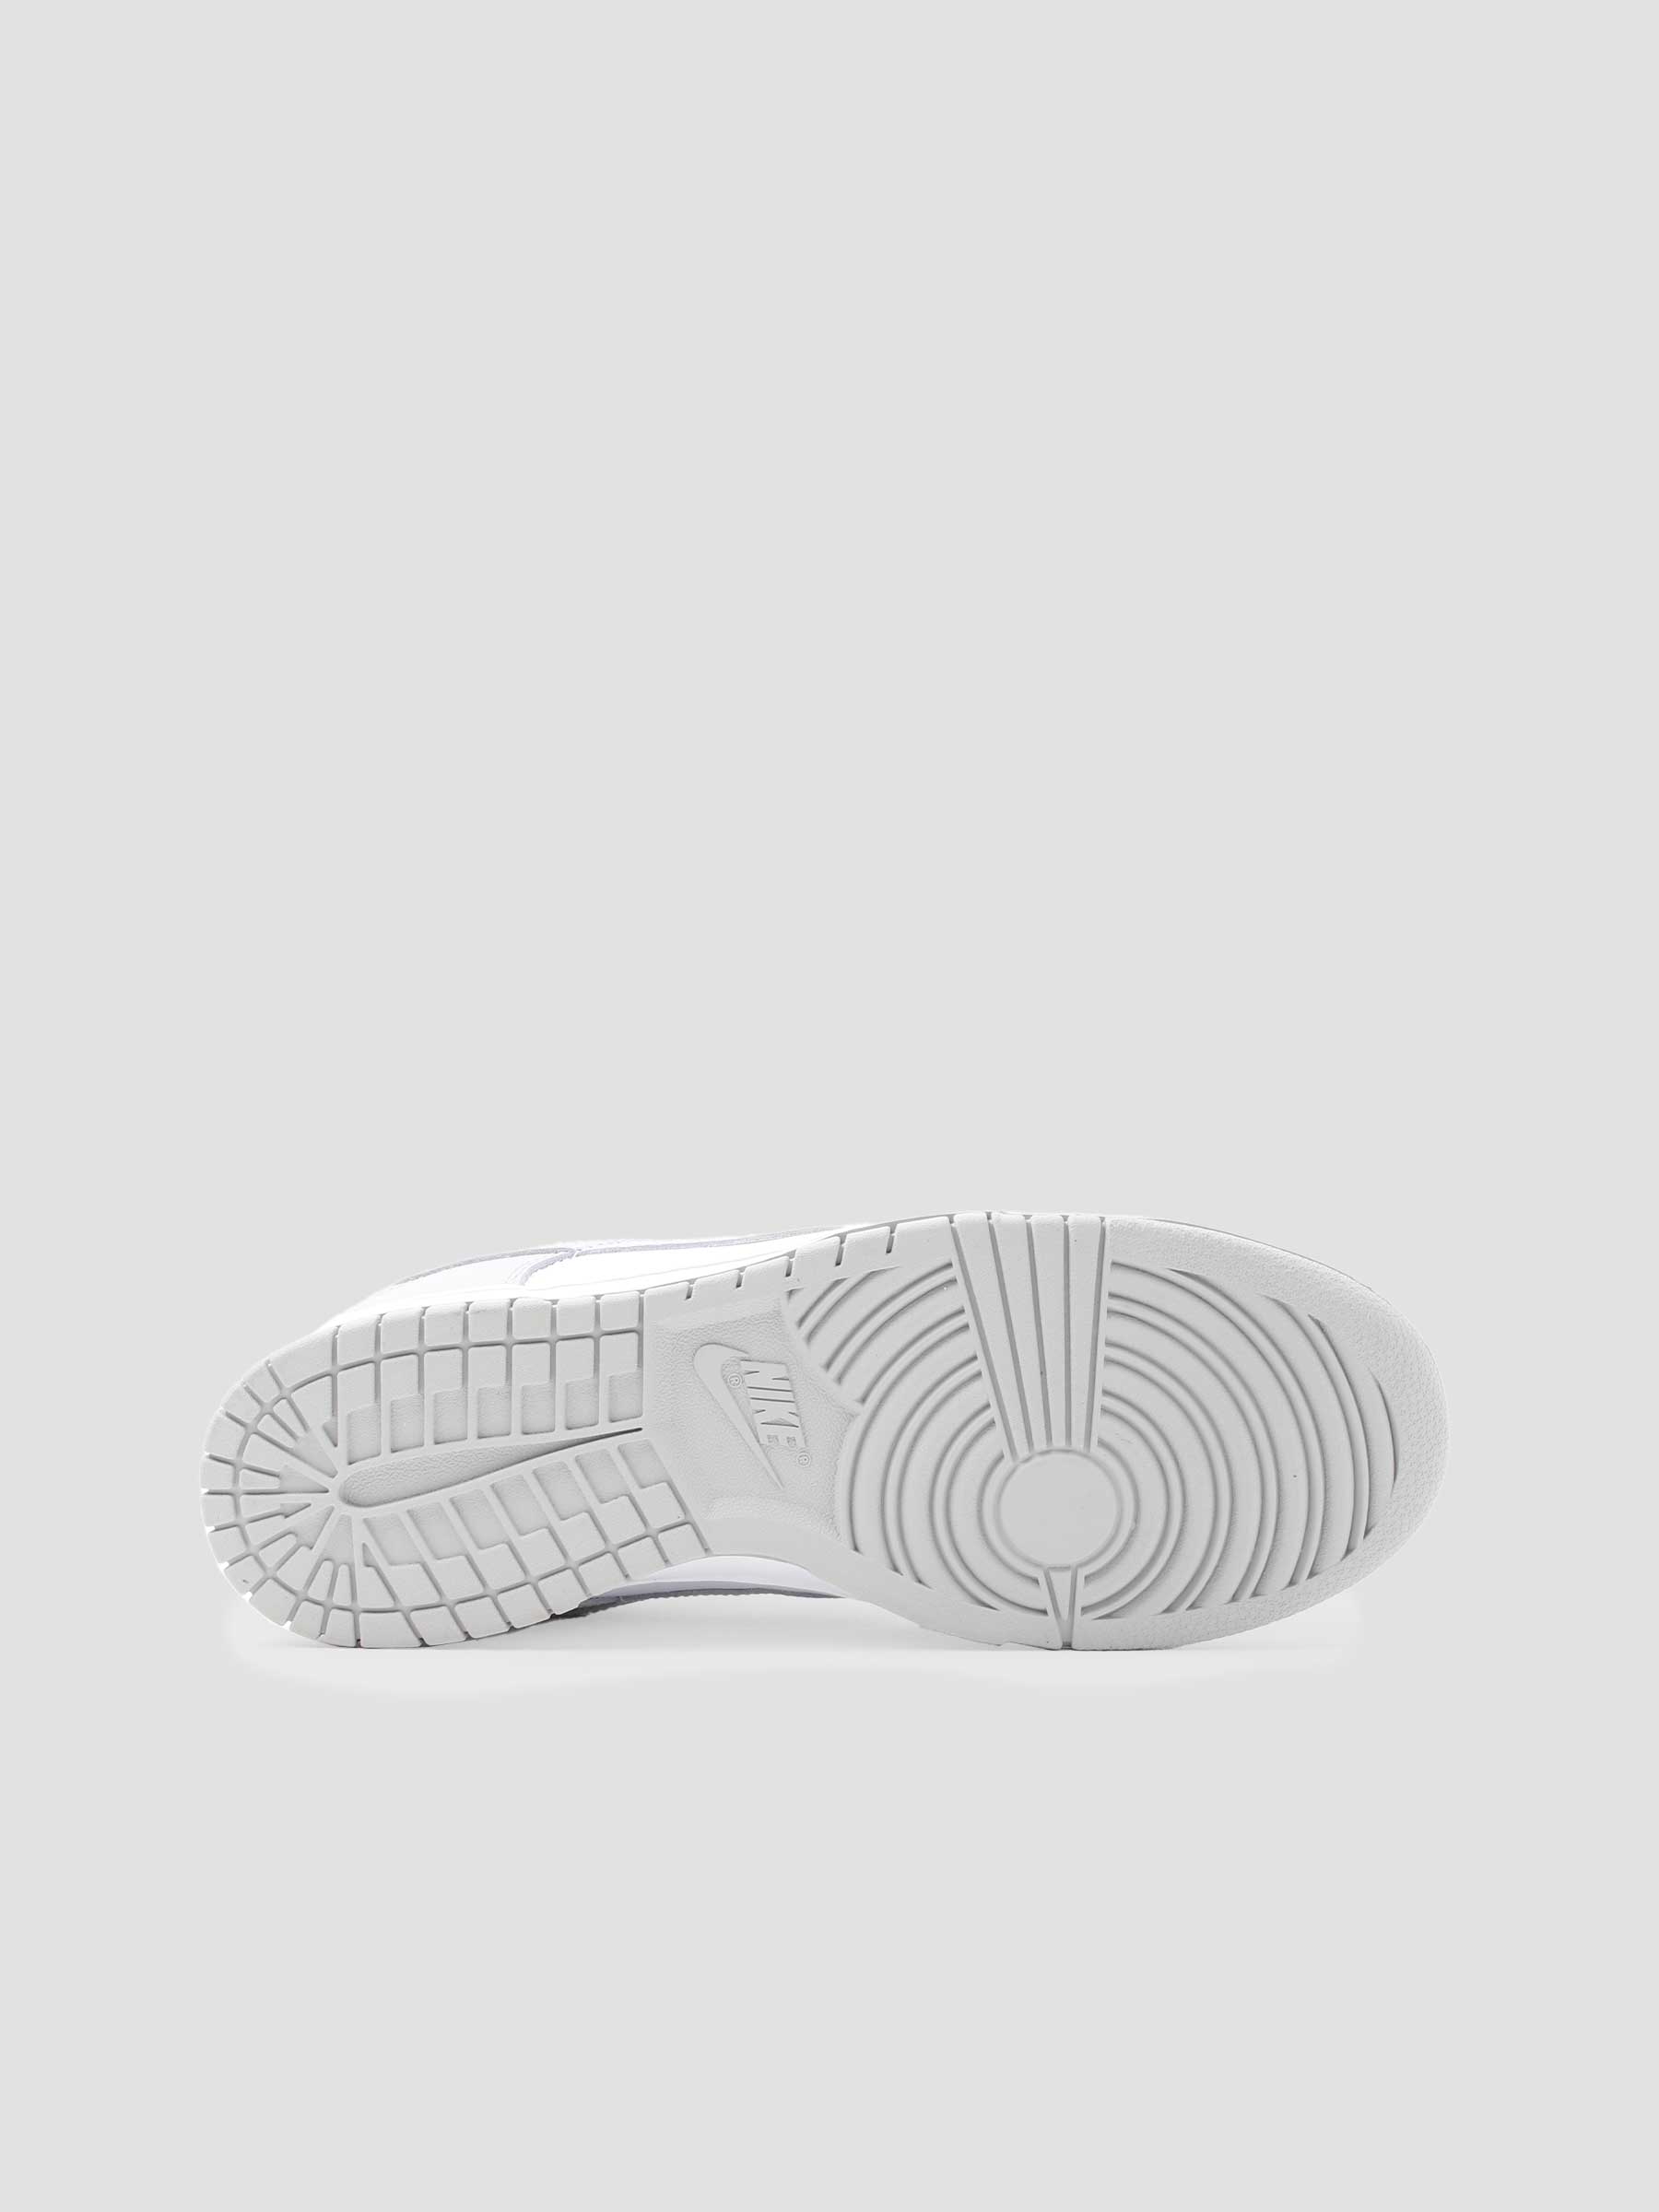 Nike Dunk Low Retro Sneaker Grey Fog DD1391-103 | Freshcotton